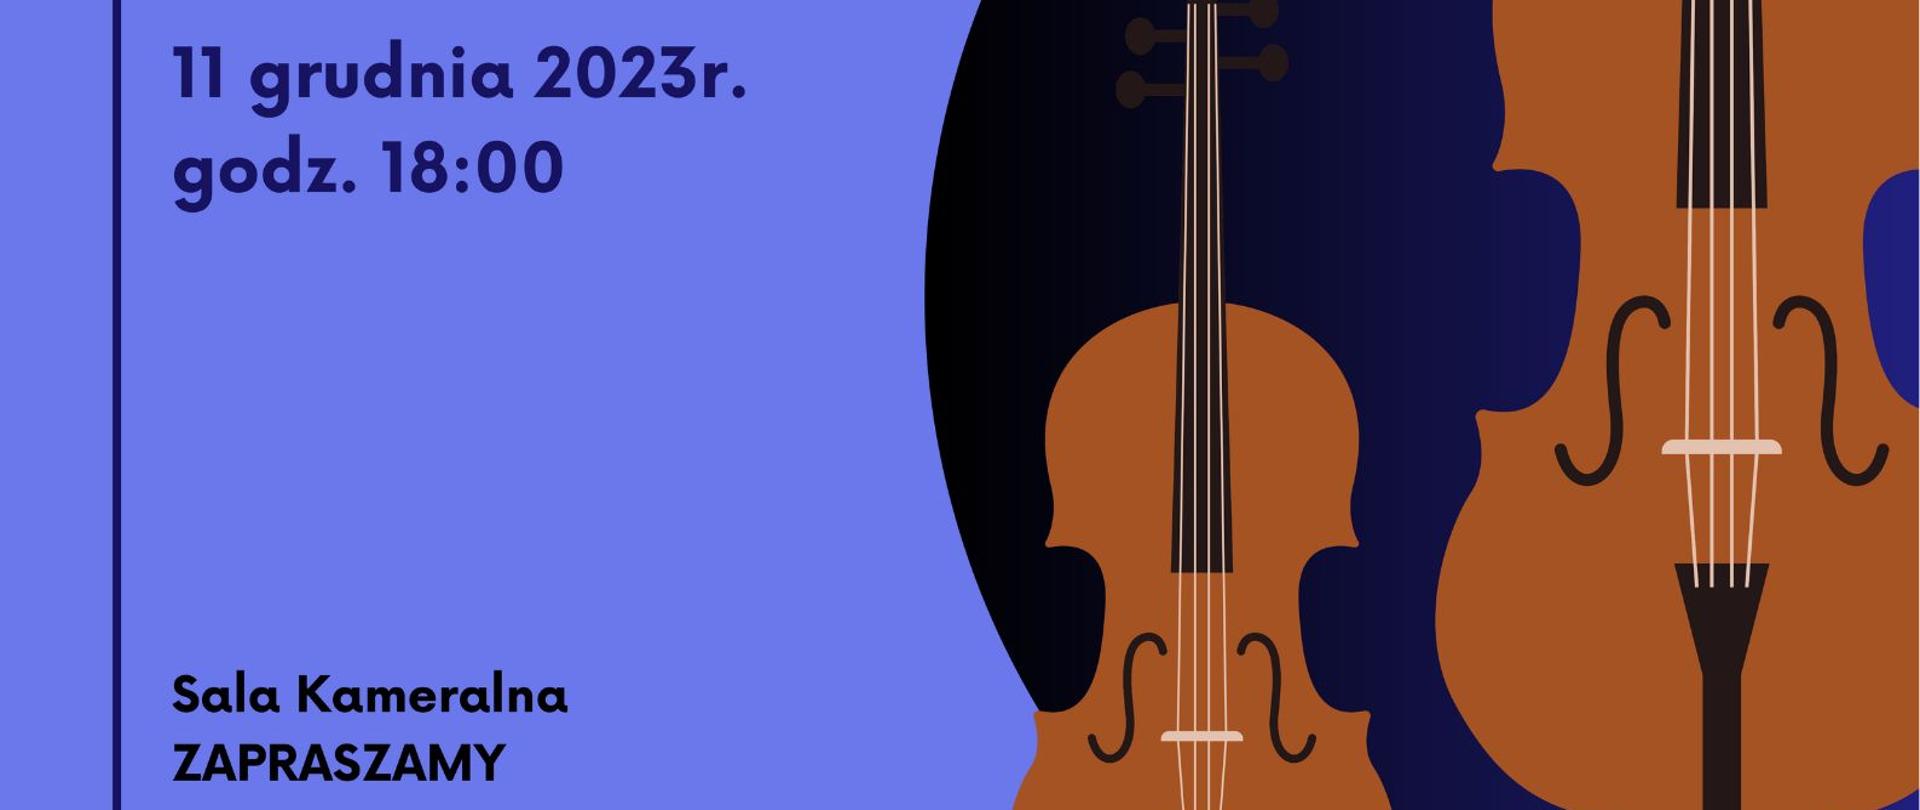 Audycja klasy skrzypiec i wiolonczeli, która odbędzie się dnia 11.12.2023 w sali kameralnej. Nauczyciele: Pan Mateusz Kasprzak-Łabudziński (skrzypce) i Pani Elżbieta Jopek (wiolonczela), przy fortepianie Pan Zenon Dąbek.